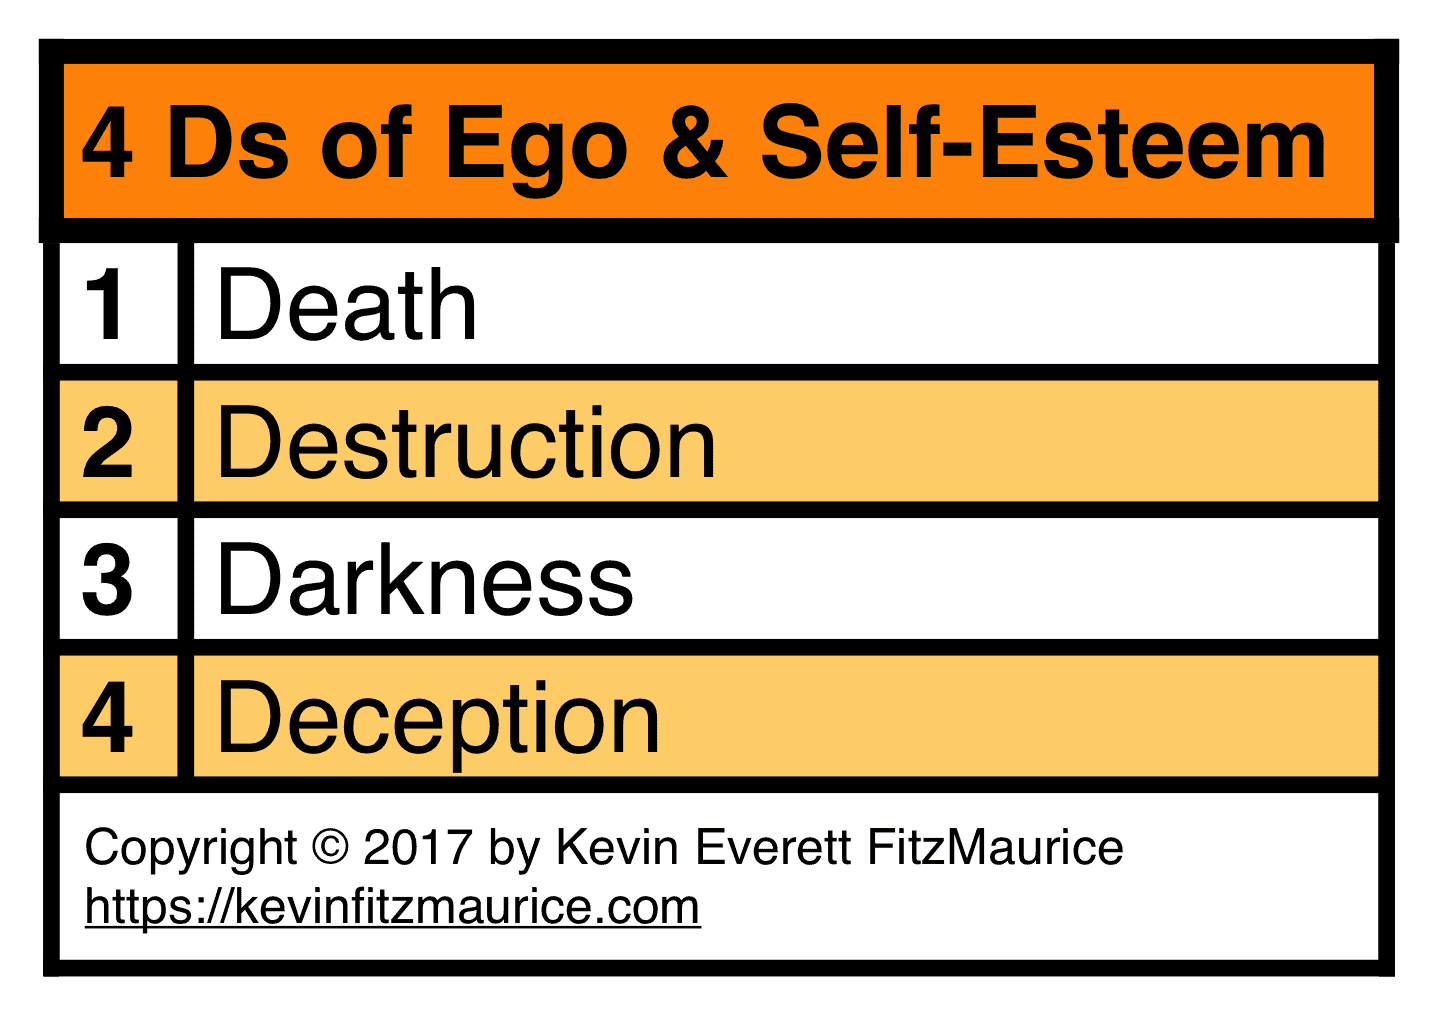 4 Ds of Ego & Self-Esteem